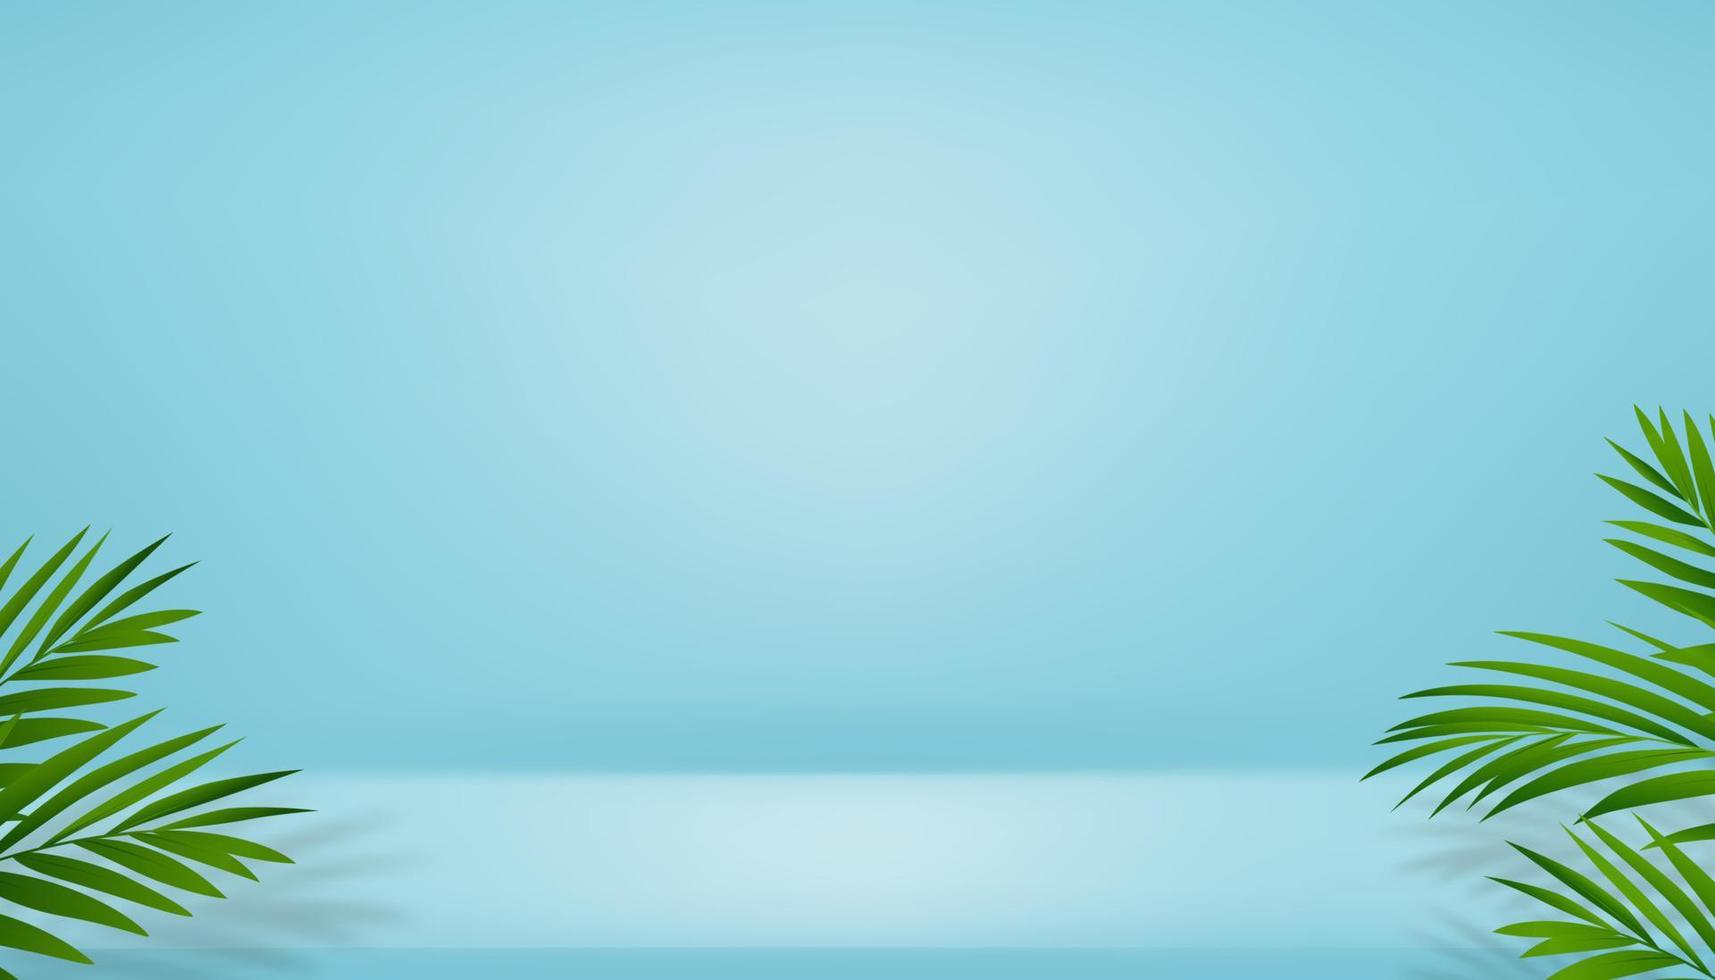 3d Studio Zimmer Anzeige mit Kokosnuss Palme Blatt und Schatten auf Blau Mauer Hintergrund, leer Galerie Zimmer mit Podium, Vektor Hintergrund Hintergrund Attrappe, Lehrmodell, Simulation zum Frühling Sommer Kosmetik, Produkt präsentieren, werben